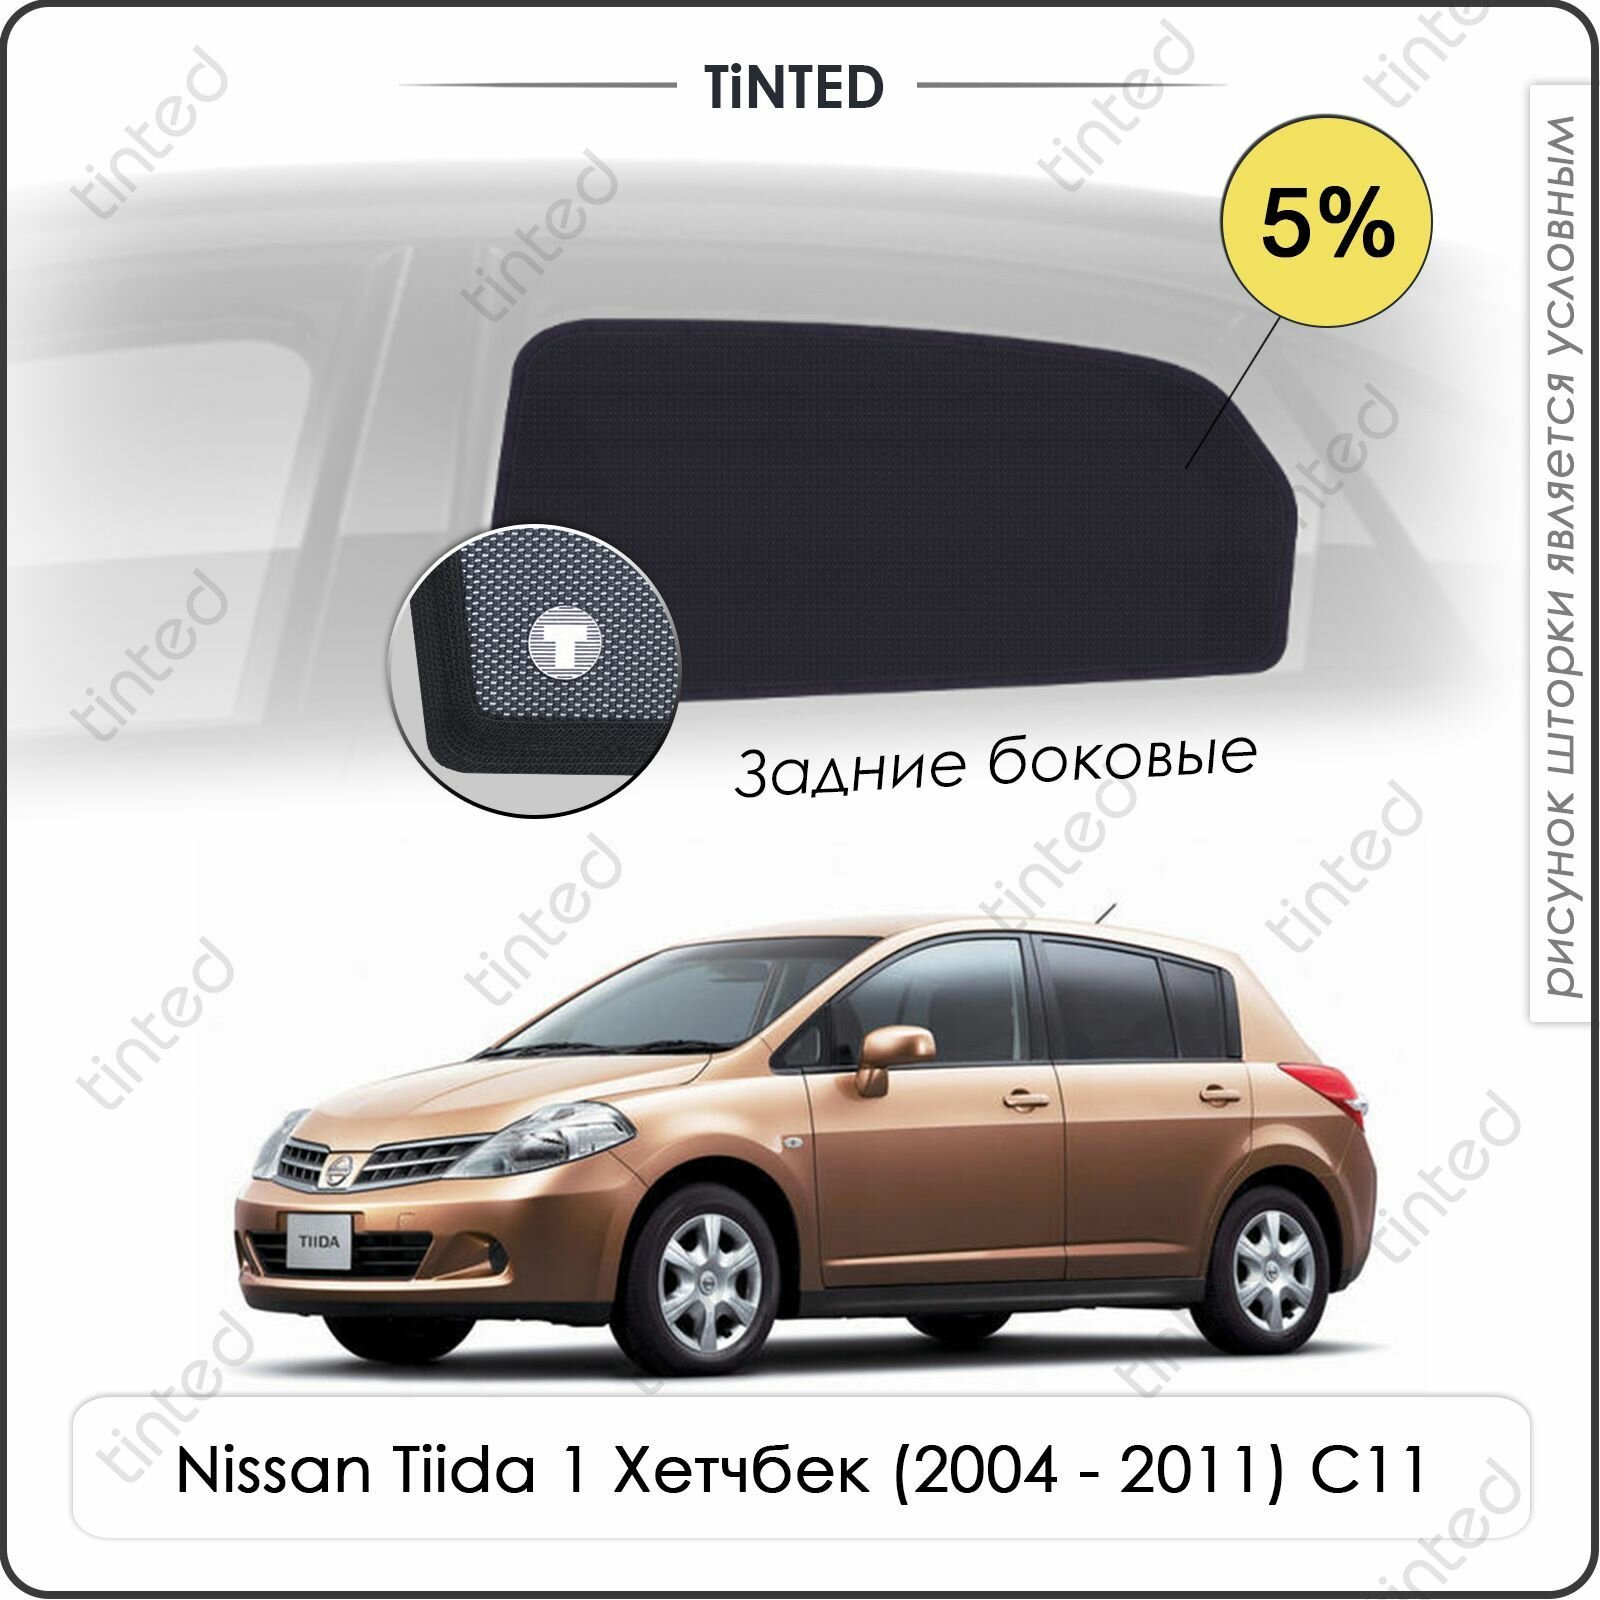 Шторки на автомобиль солнцезащитные Nissan Tiida 1 Хетчбек 5дв. (2004 - 2011) C11 на передние двери 5% сетки от солнца в машину ниссан тиида Каркасные автошторки Premium